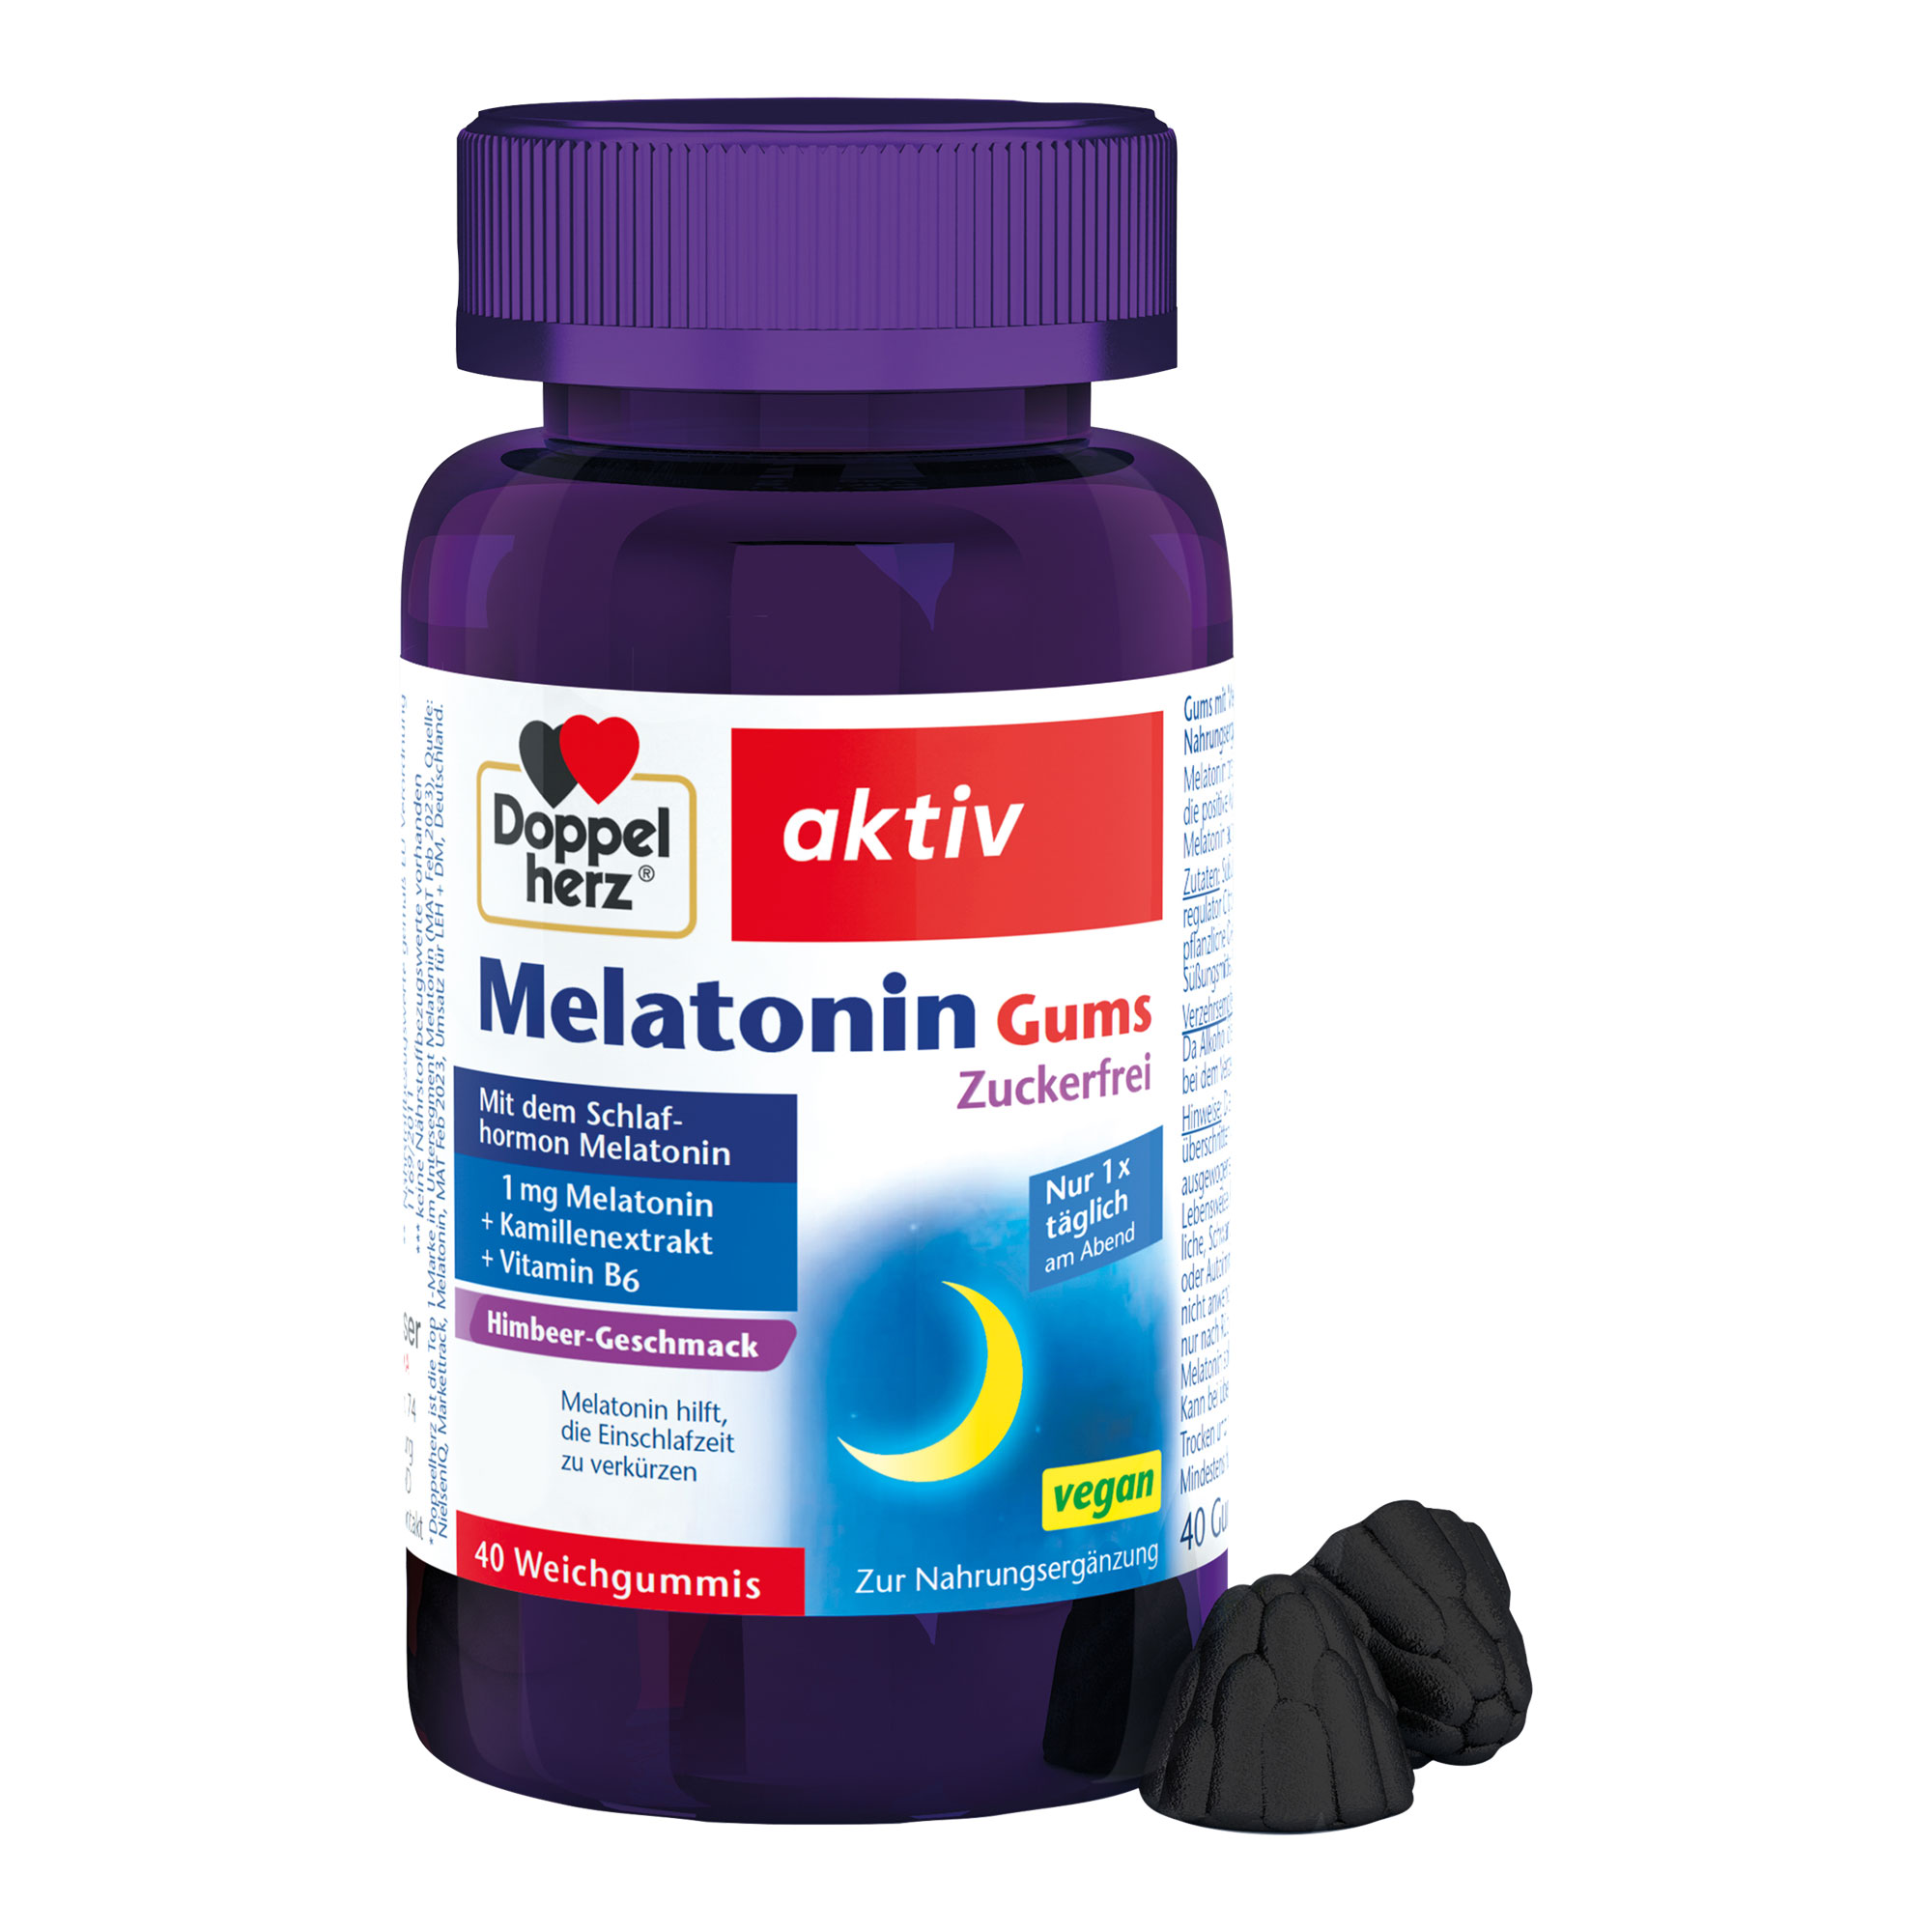 Nahrungsergänzungsmittel mit Melatonin, Vitamin B6 und Kamillenblüten-Extrakt. Mit Himbeer-Geschmack.